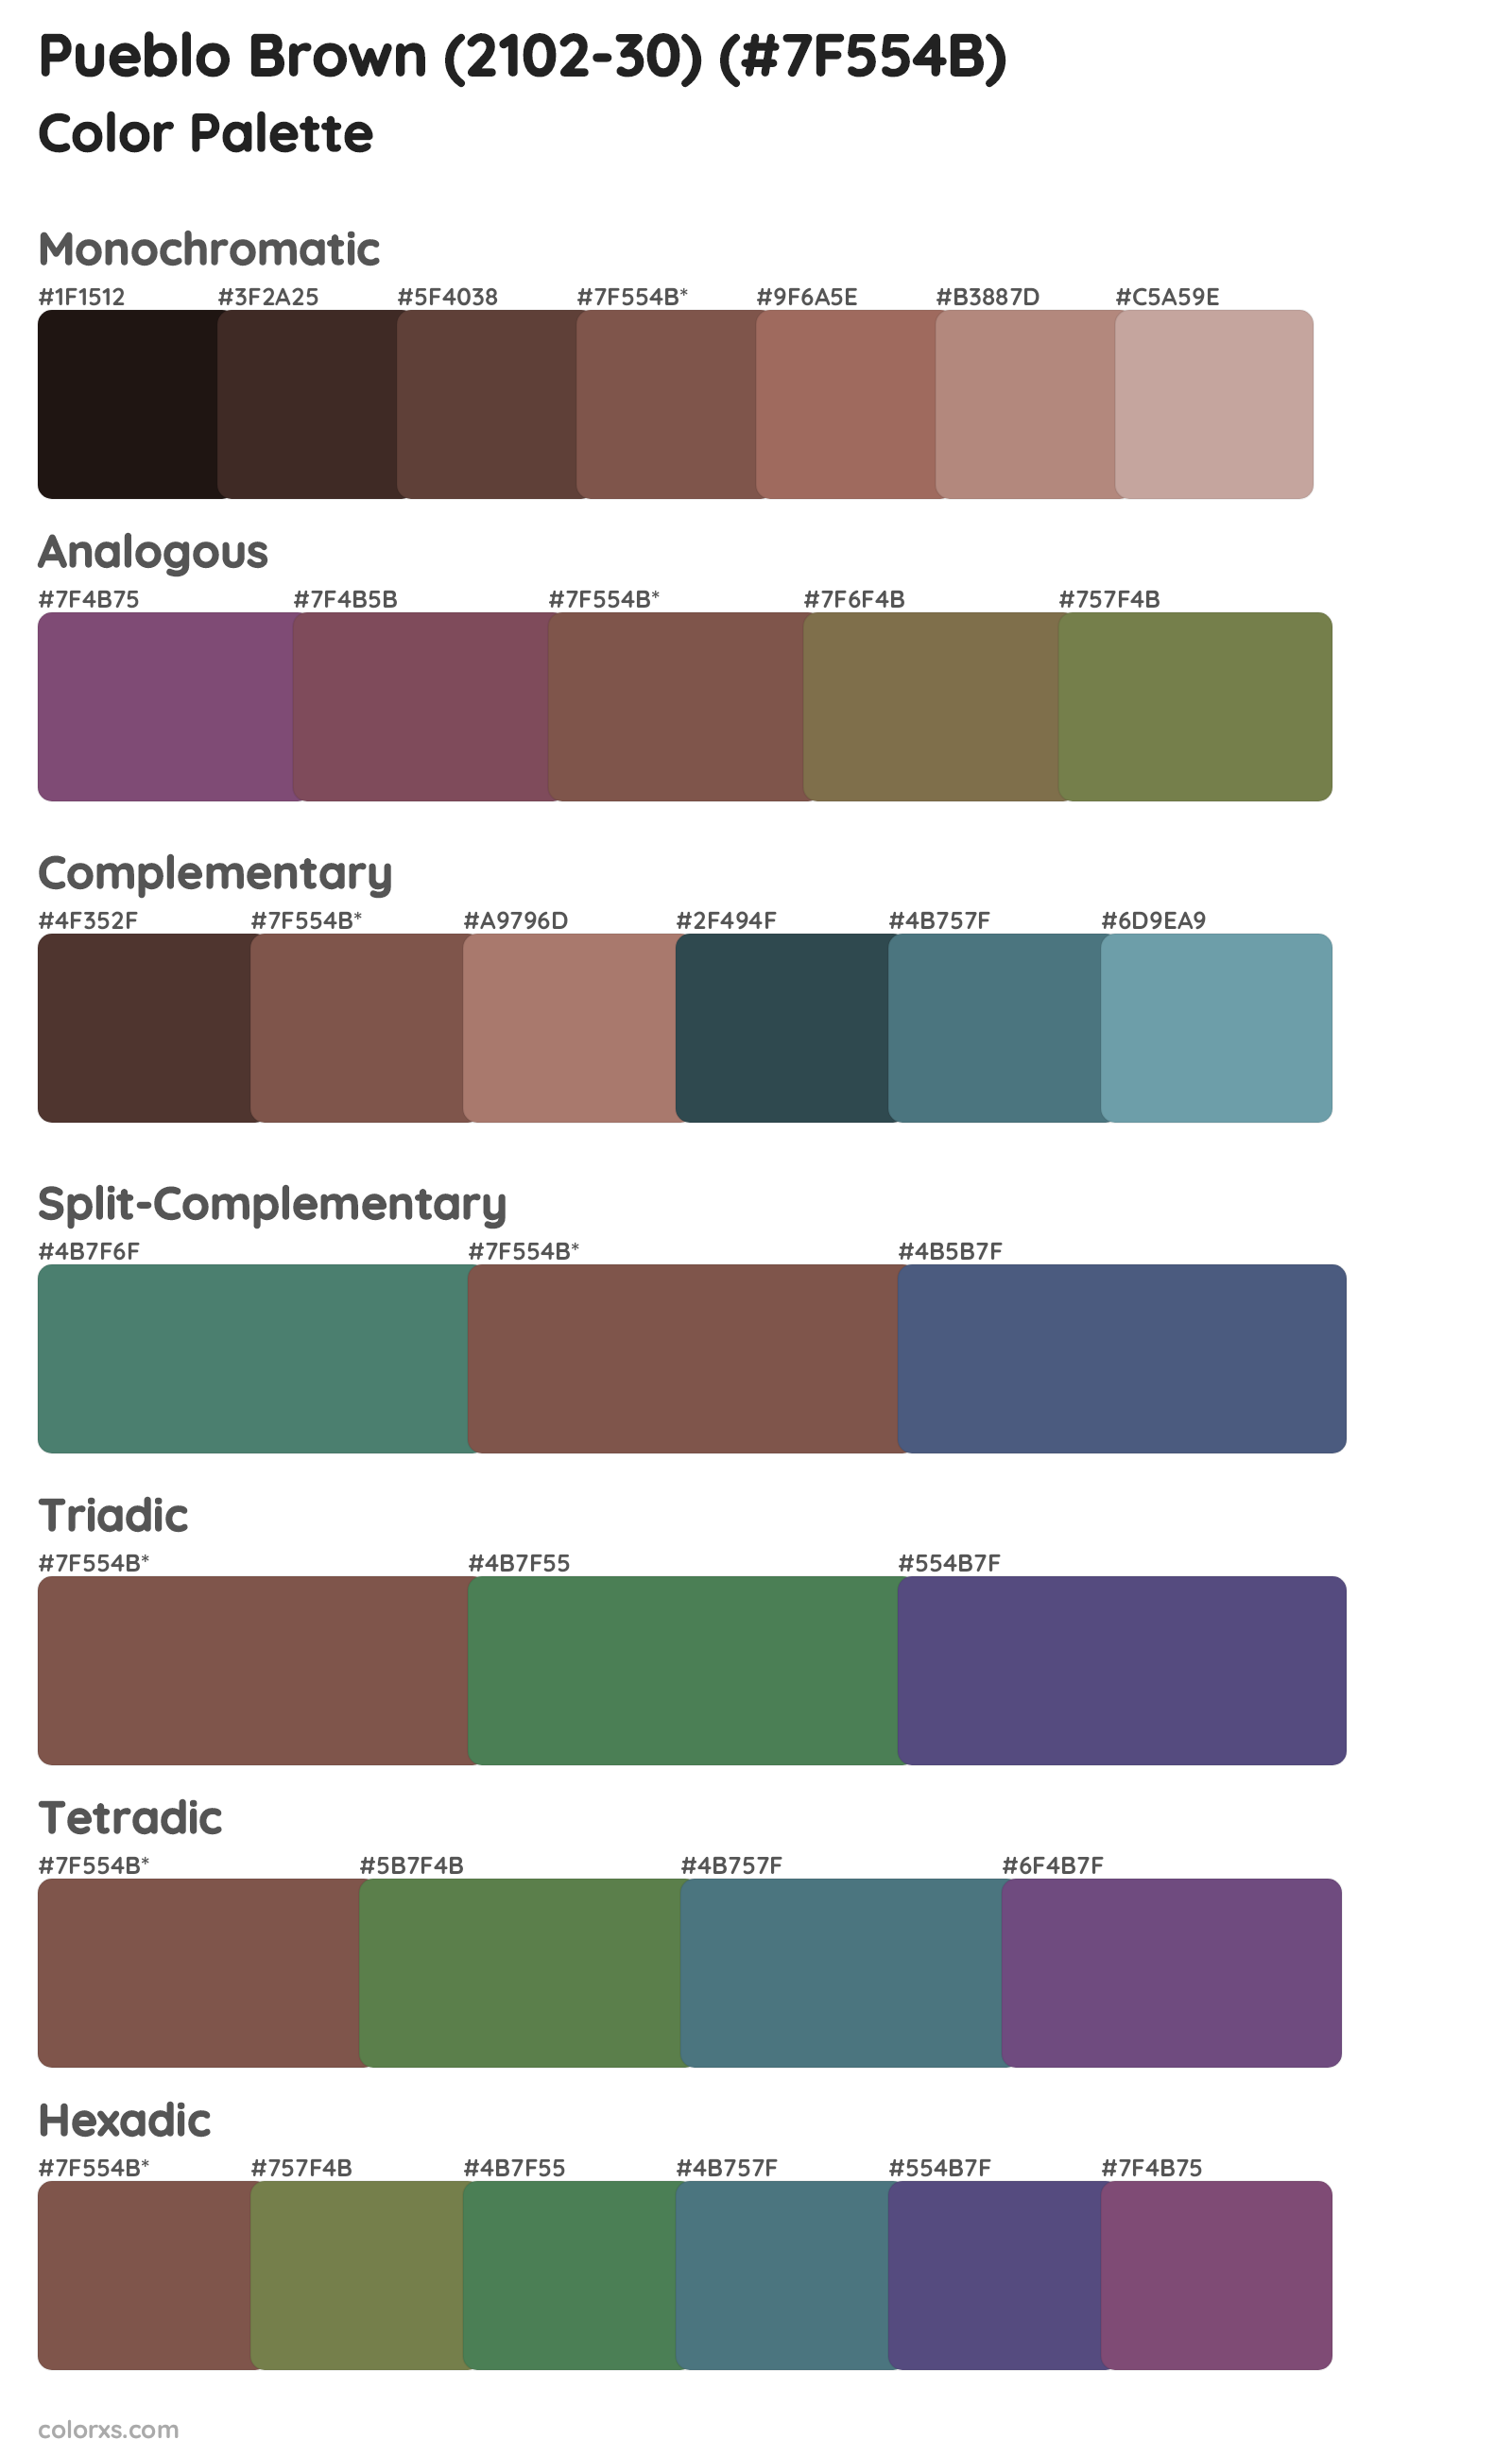 Pueblo Brown (2102-30) Color Scheme Palettes